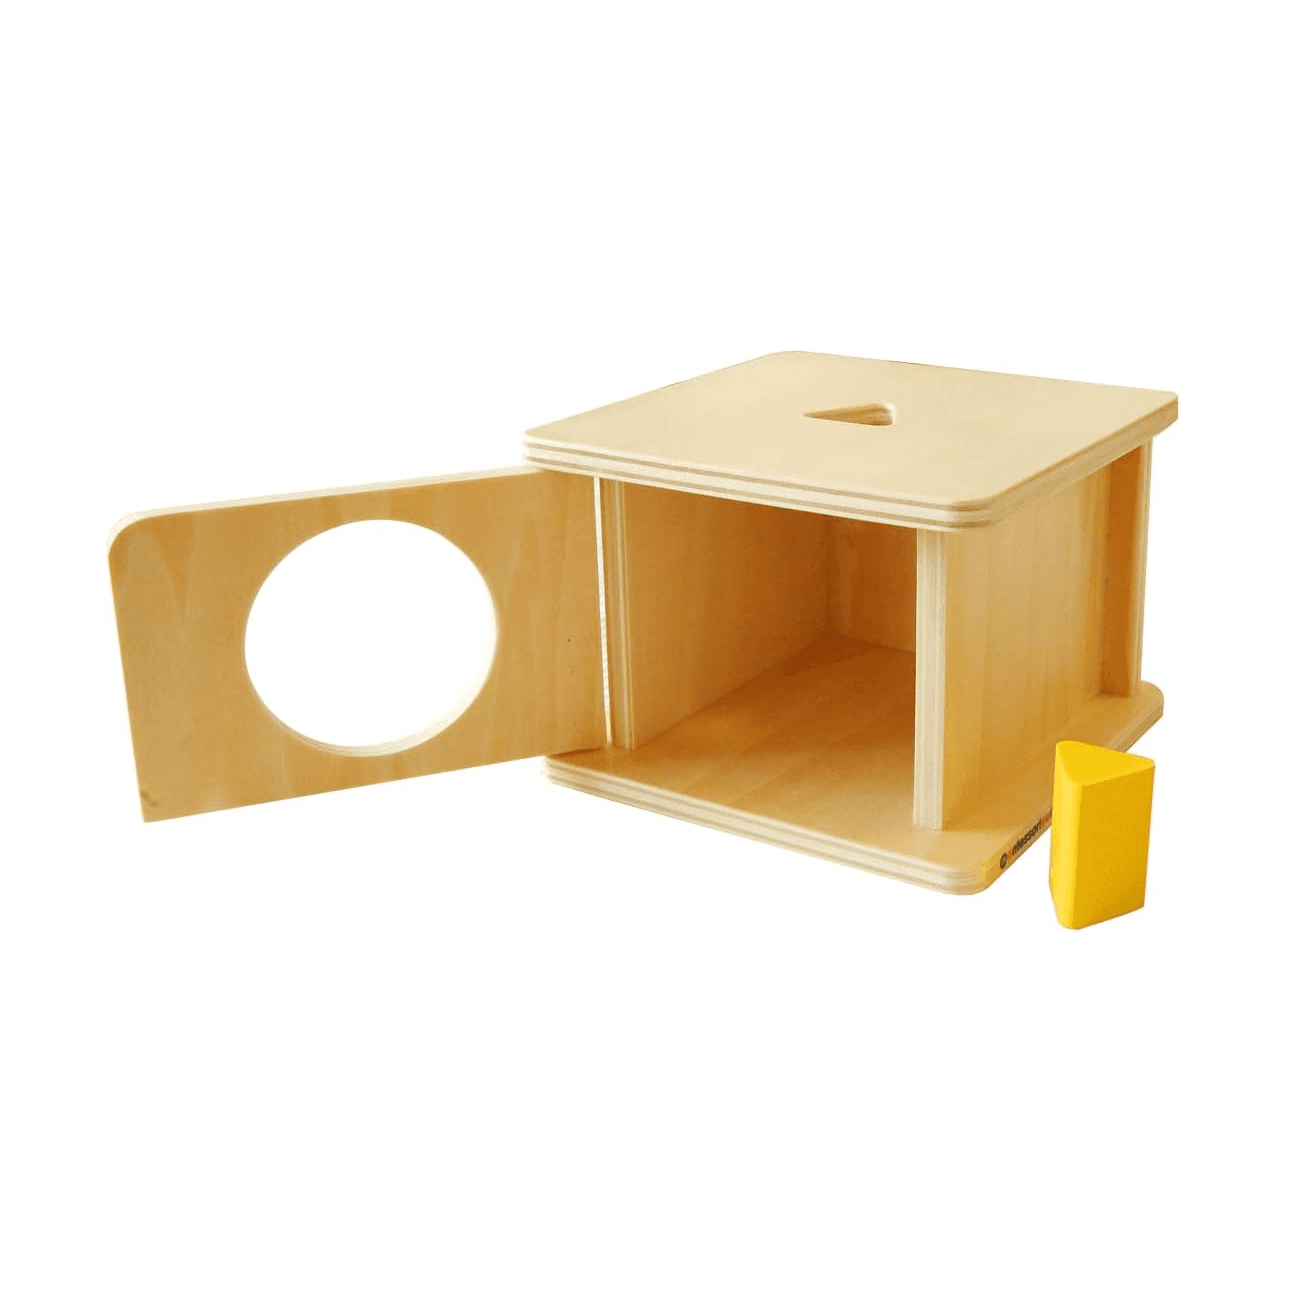 Montessori Montessori Outlet Imbucare Box With Triangle Prism